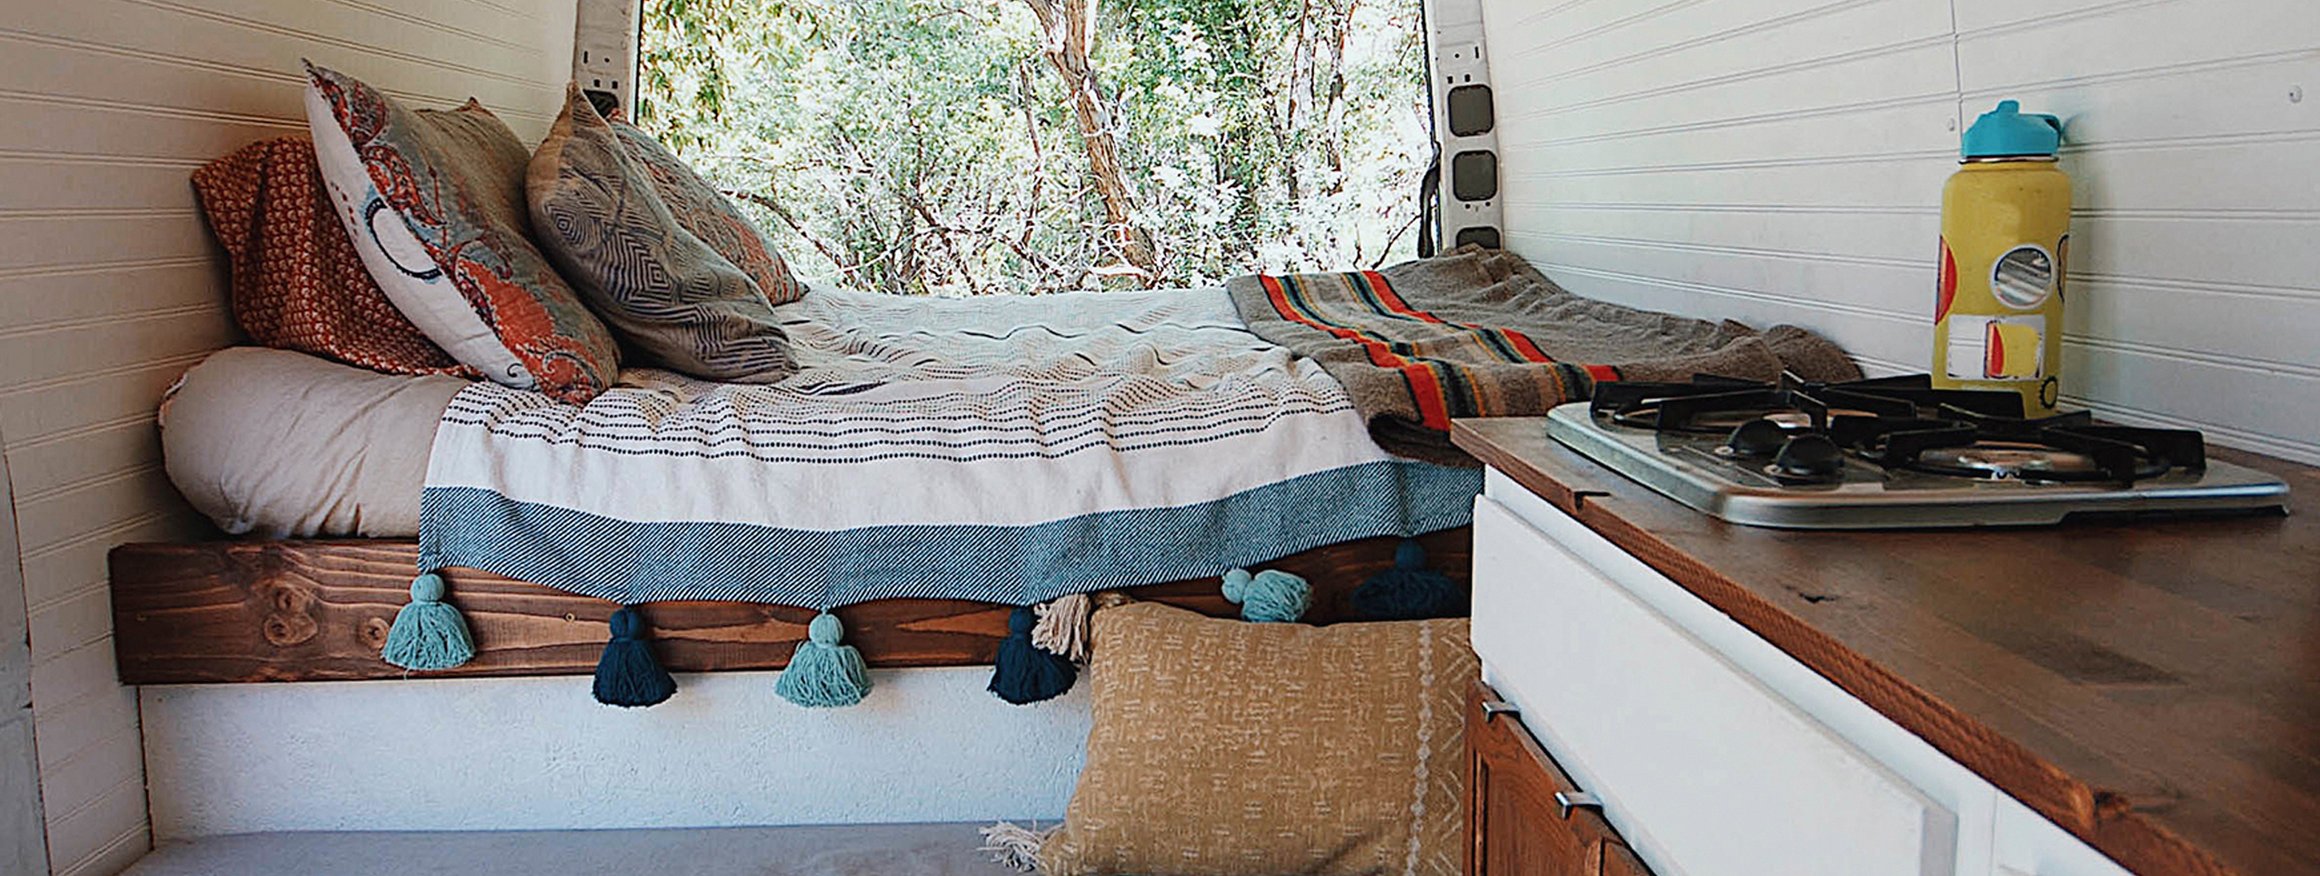 Ein Bett und eine Küchenzeile in einem Tinyhouse